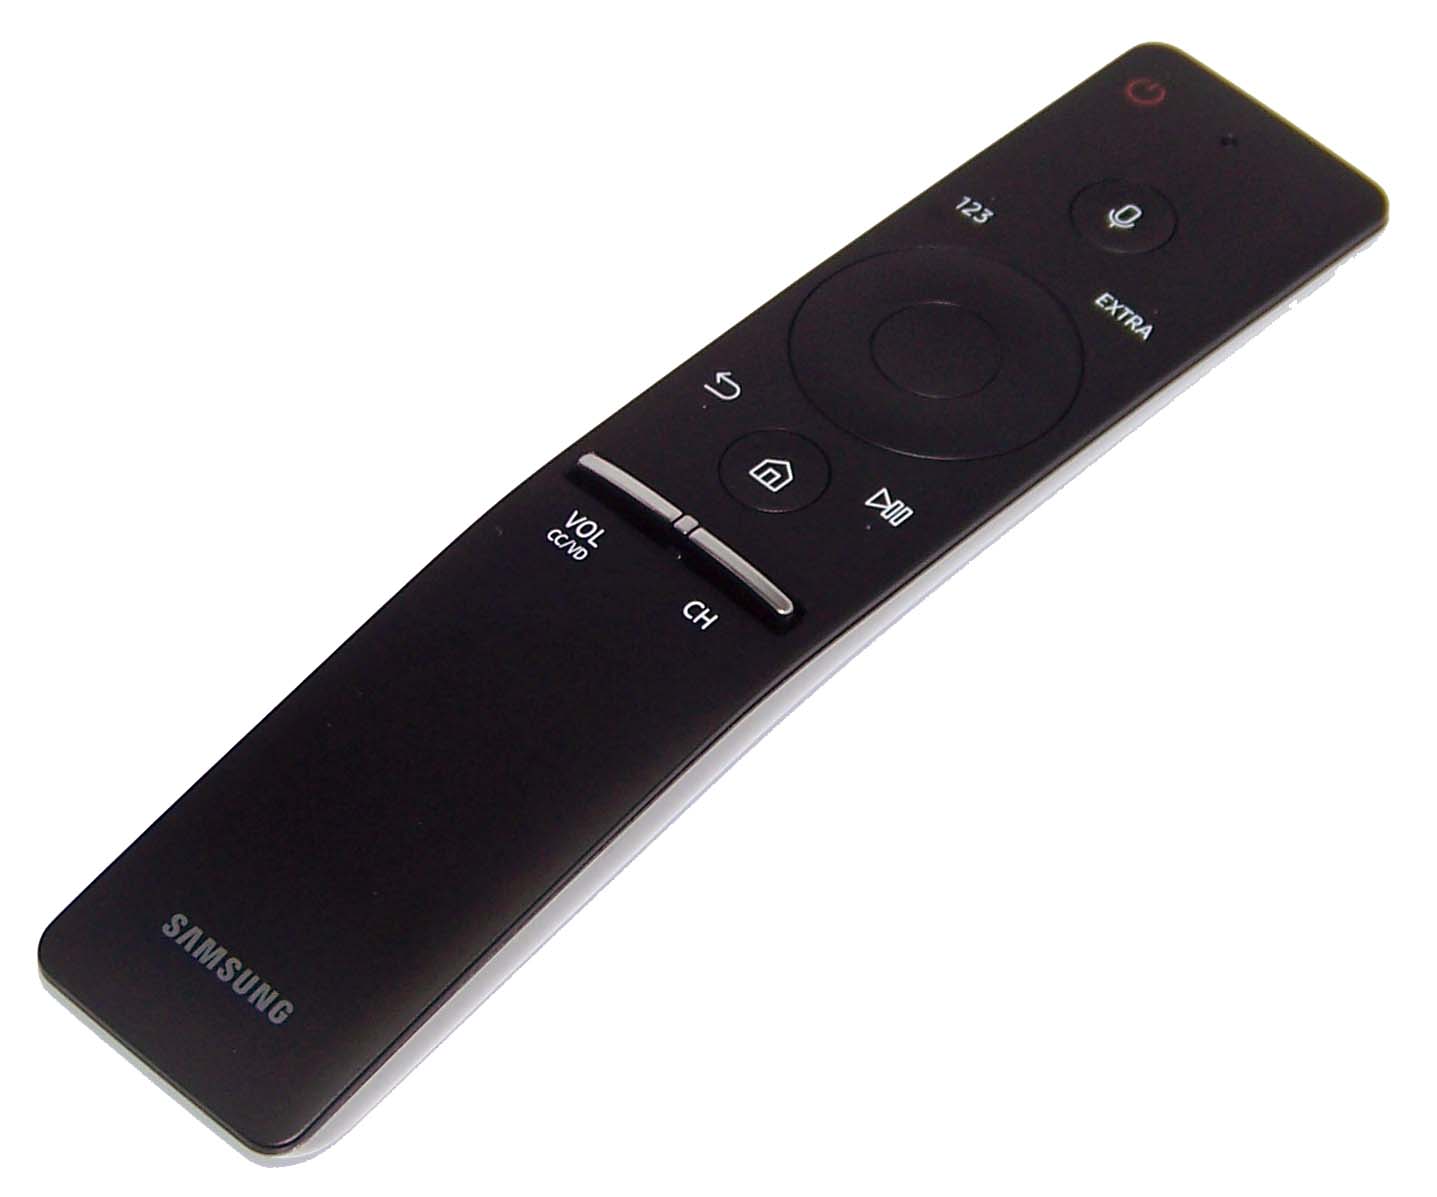 Genuine OEM Samsung Remote Control Shipped With UN78KS9500F, UN78KS9500FXZA